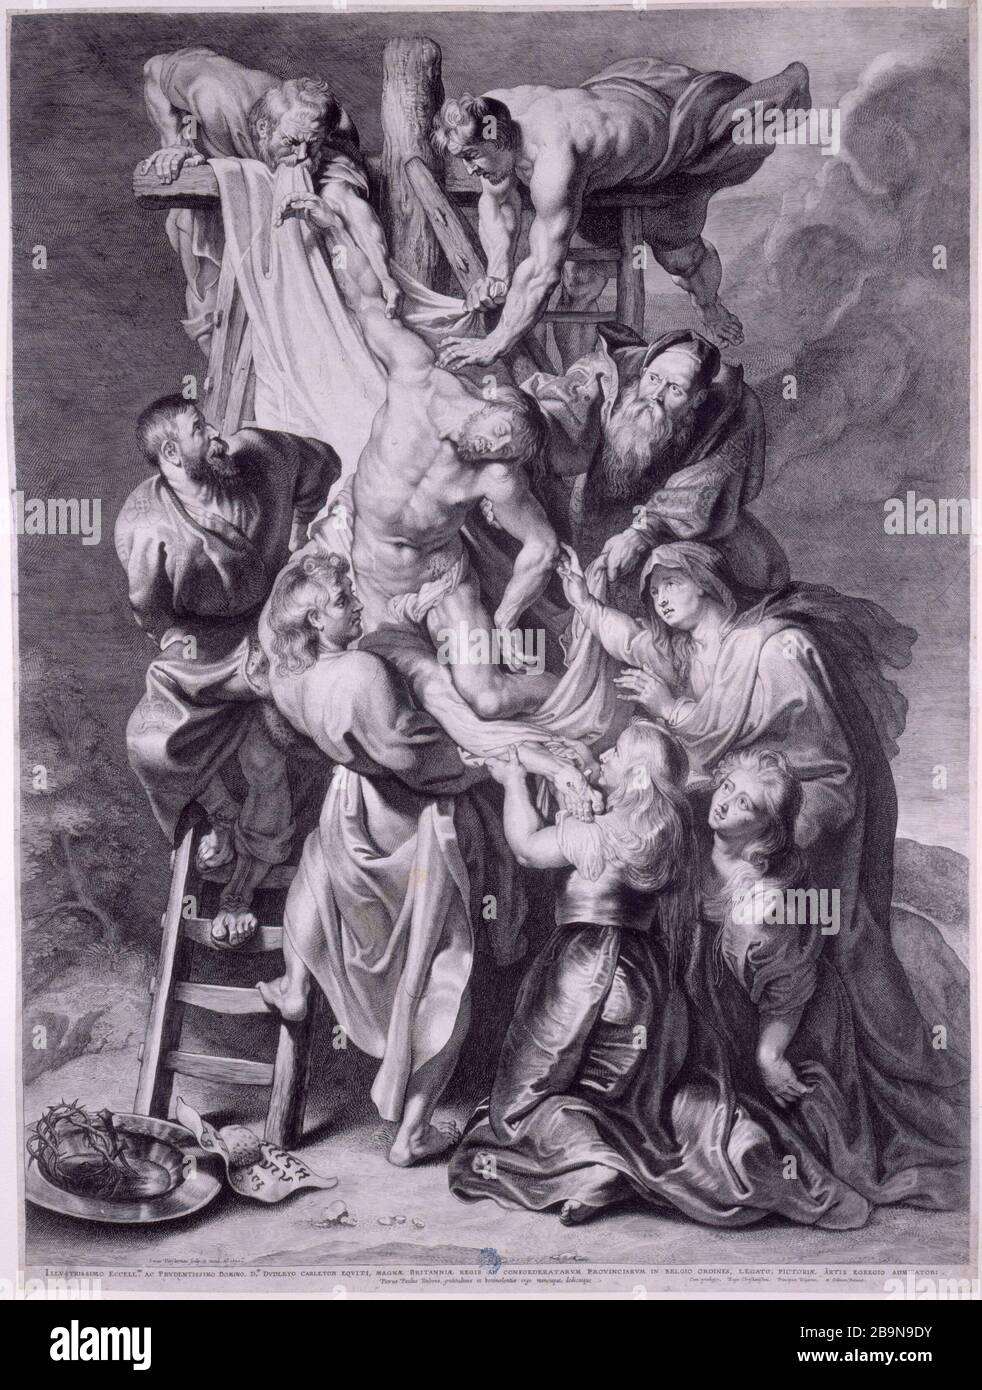 THE GREAT CROSS DOWNHILL Lucas Vorsterman (1595-1675). 'La Grande descente de croix', gravure d'après l'oeuvre de Pierre-Paul Rubens (1577-1640), conservée dans la cathédrale Notre-Dame d'Anvers. Musée des Beaux-Arts de la Ville de Paris, Petit Palais. Stock Photo